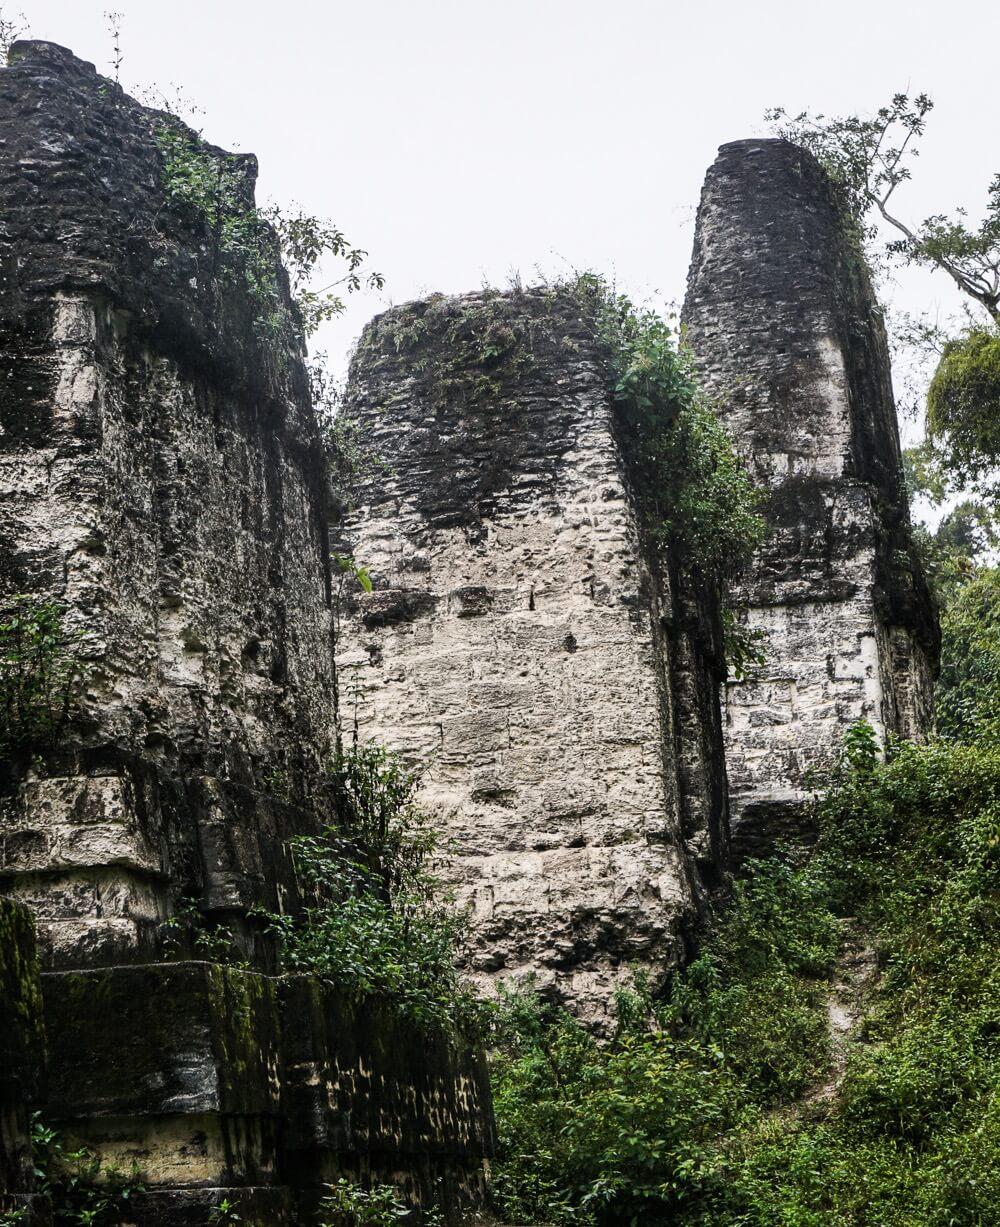 the Mayan ruins of Tikal